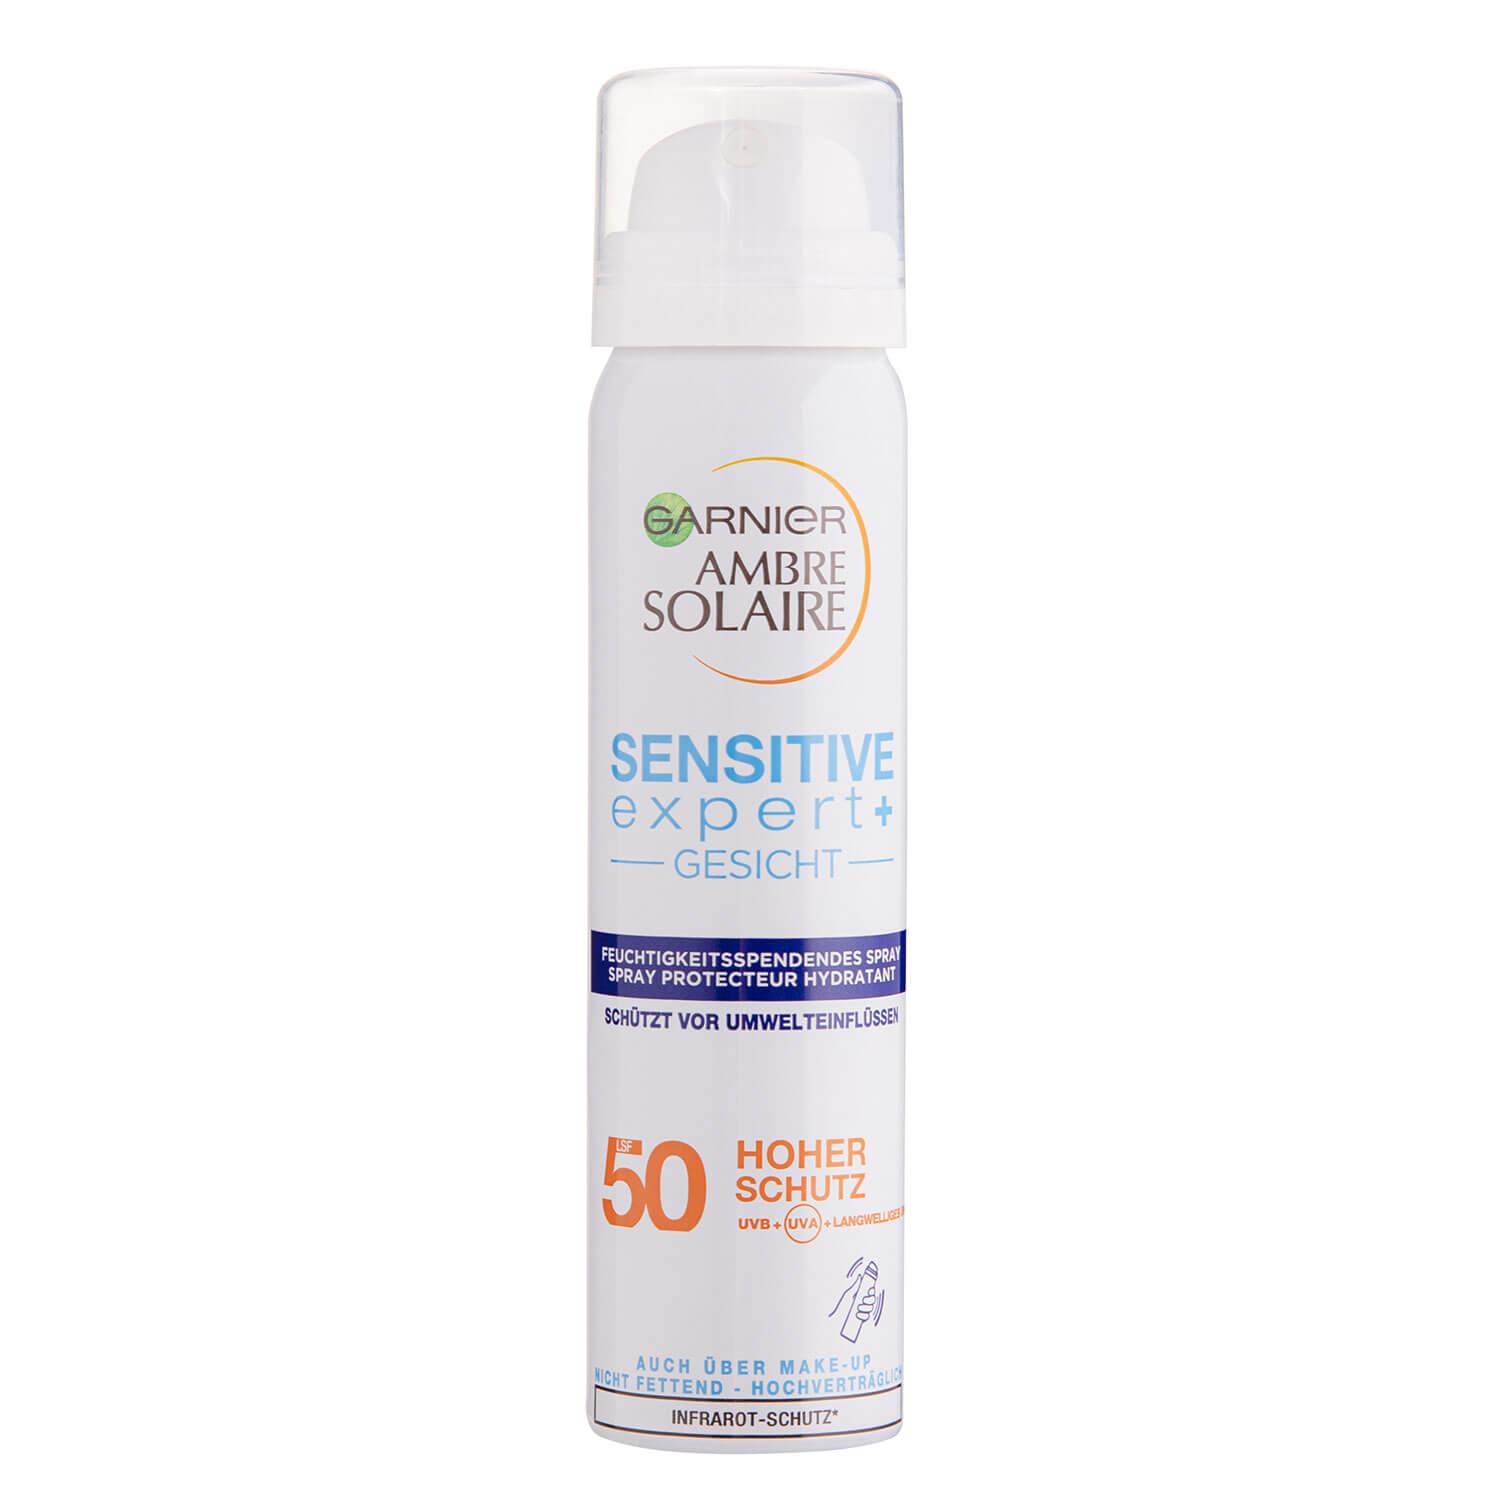 Ambre Solaire - Sensitive expert+ Feuchtigkeitsspendendes Gesichtsschutz-Spray LSF50